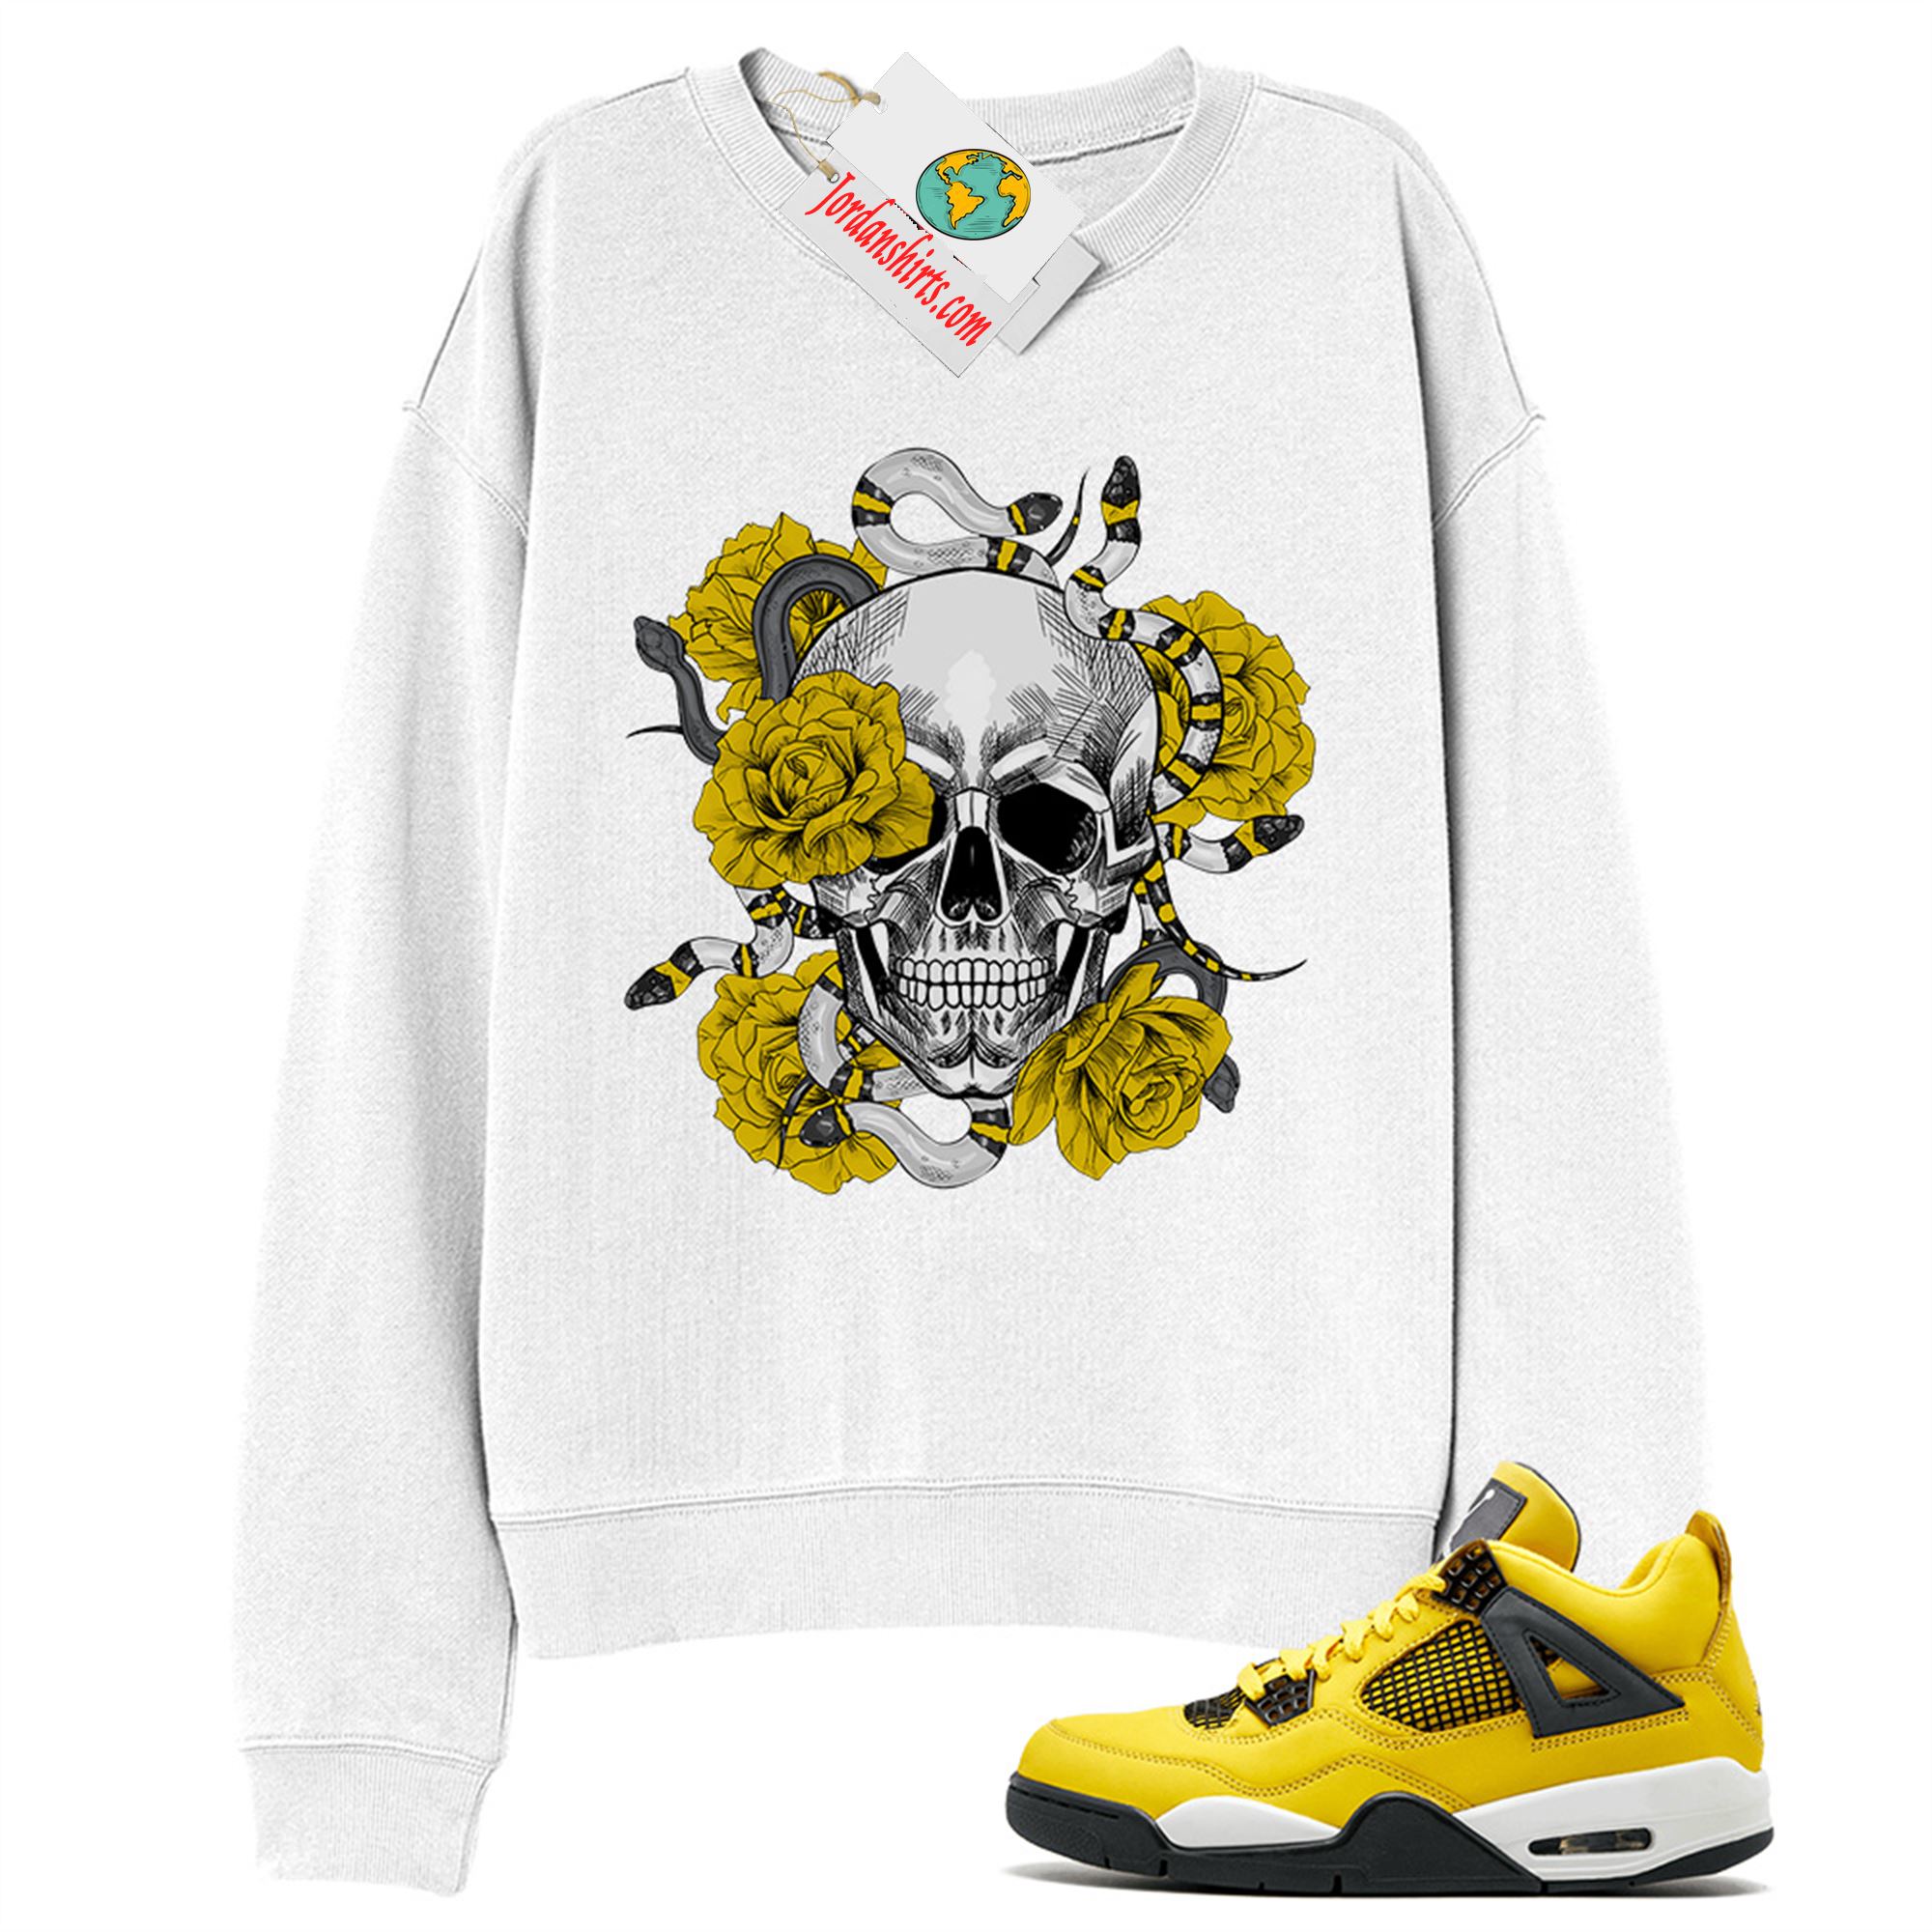 Jordan 4 Sweatshirt, Snake Skull Rose White Sweatshirt Air Jordan 4 Tour Yellowlightning 4s Plus Size Up To 5xl